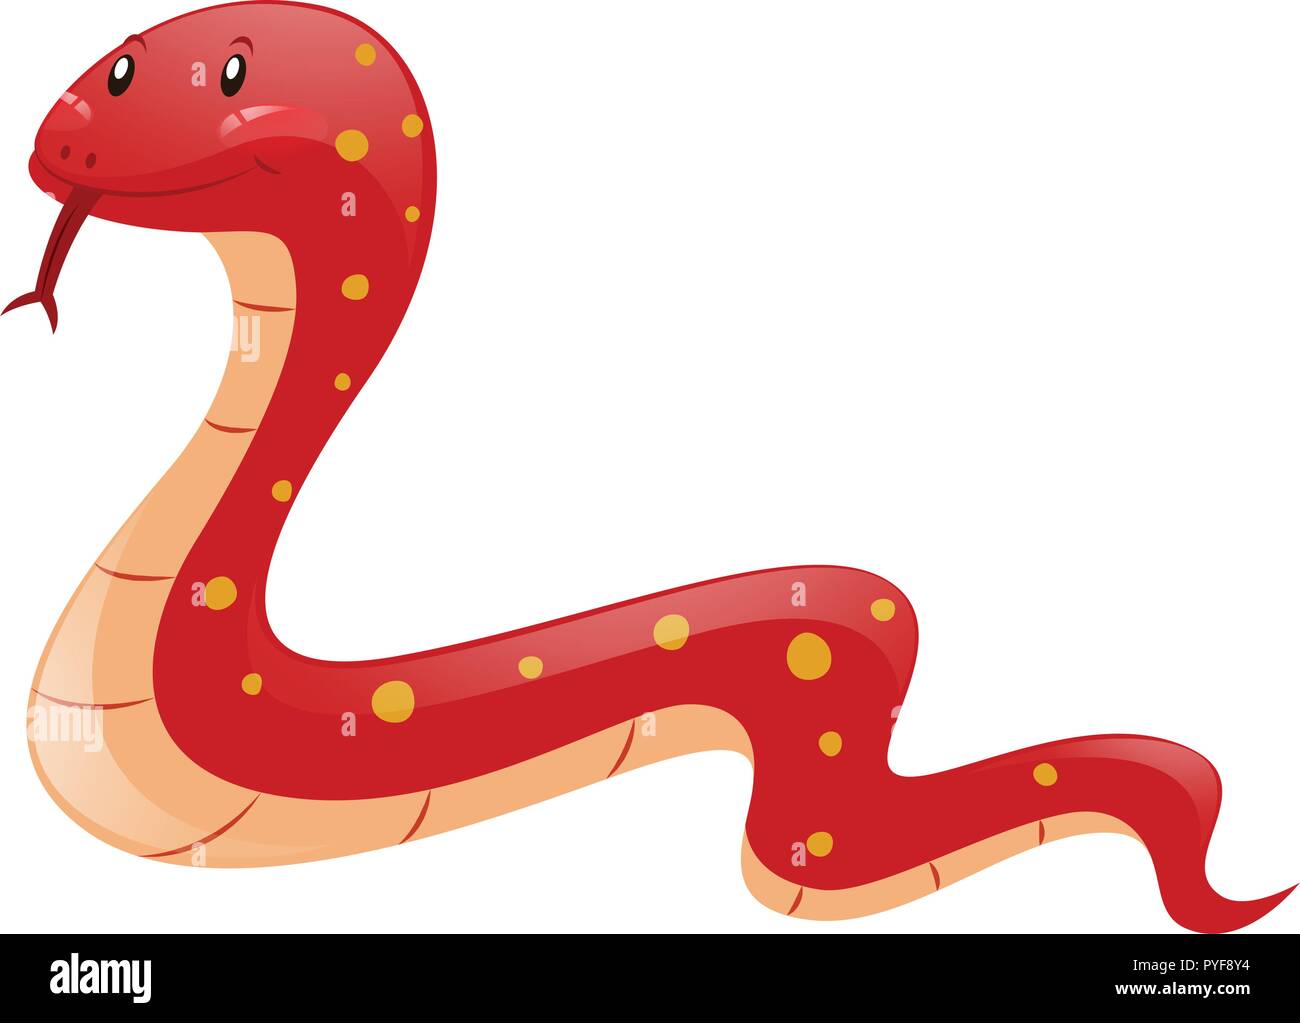 Red snake on white background illustration Stock Vector